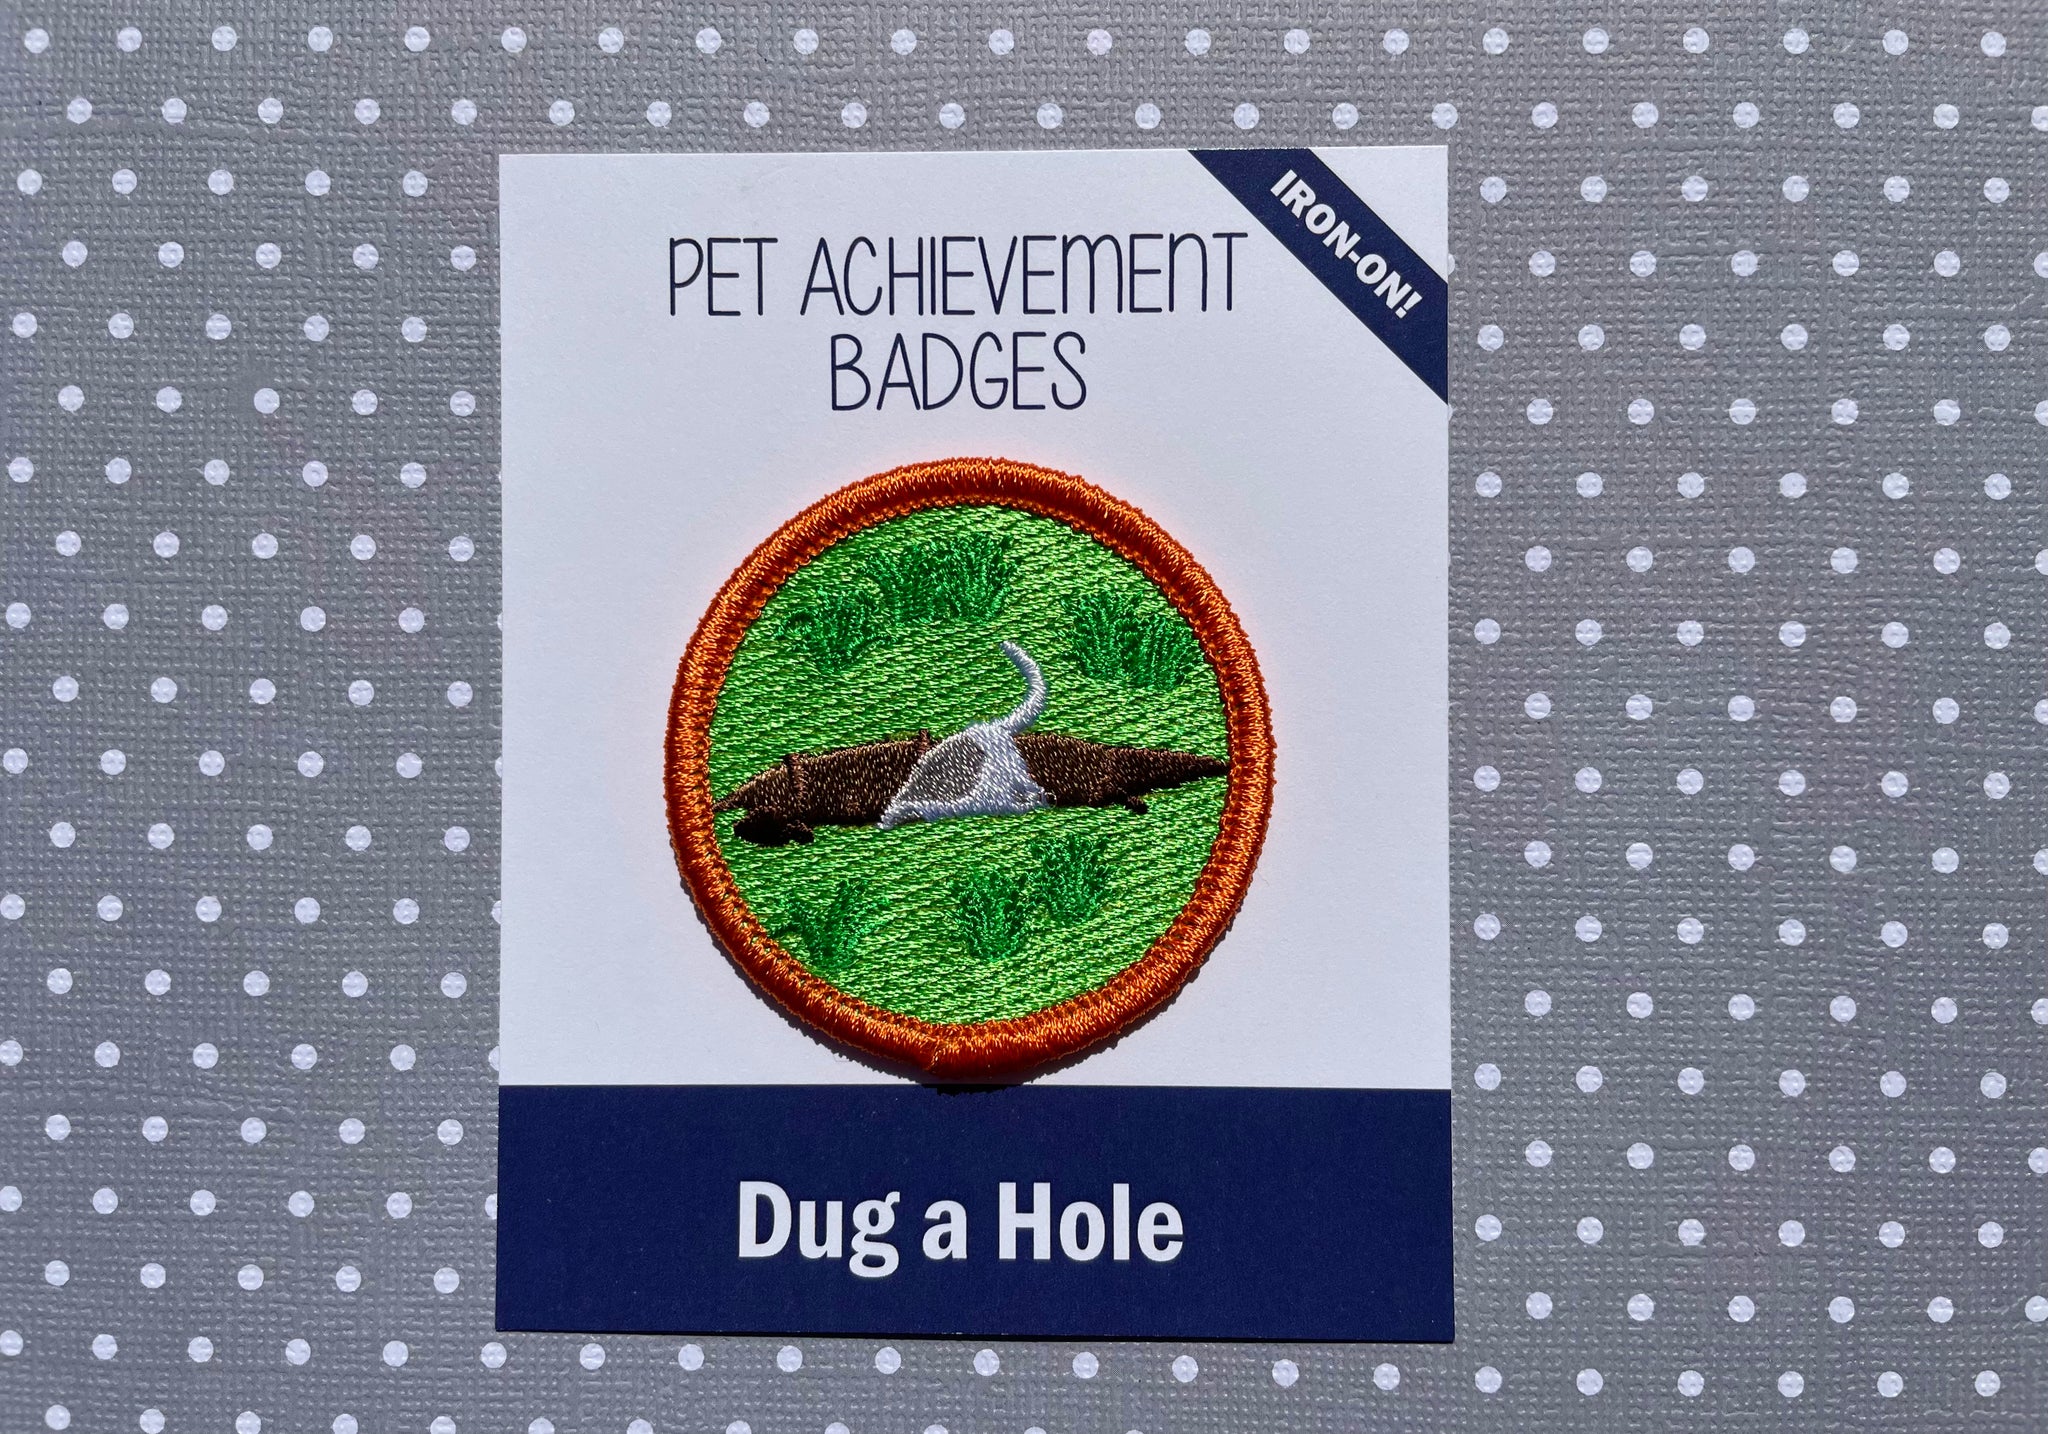 Dug a Hole, Pet Achievement Badge